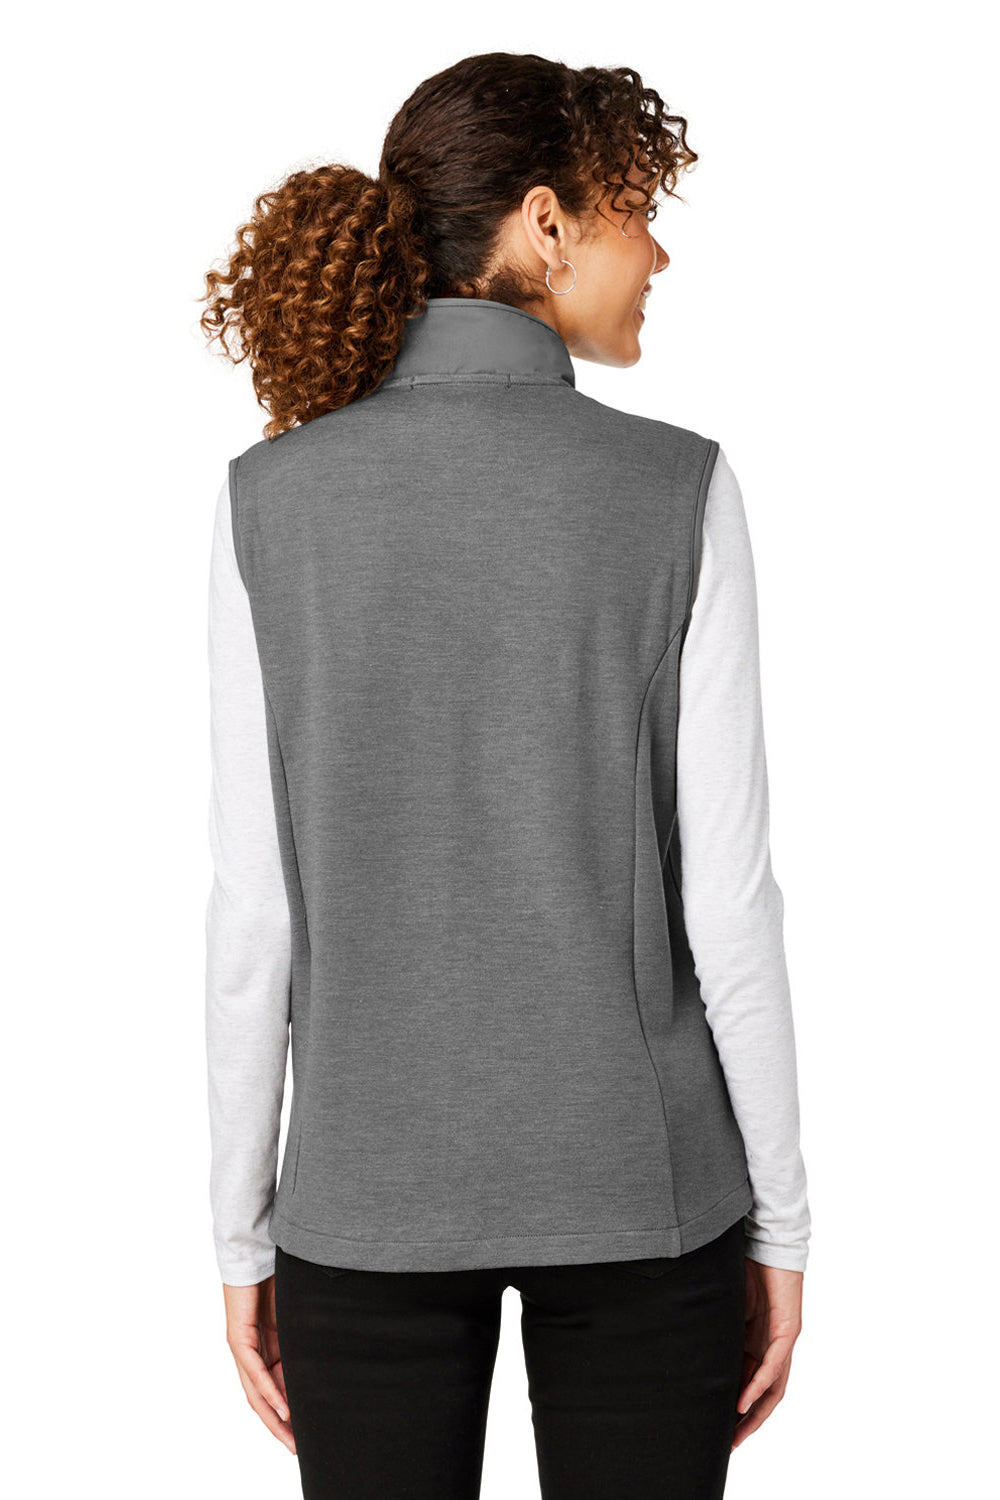 Devon & Jones DG706W Womens New Classics Charleston Hybrid Full Zip Vest Graphite Grey Melange Back